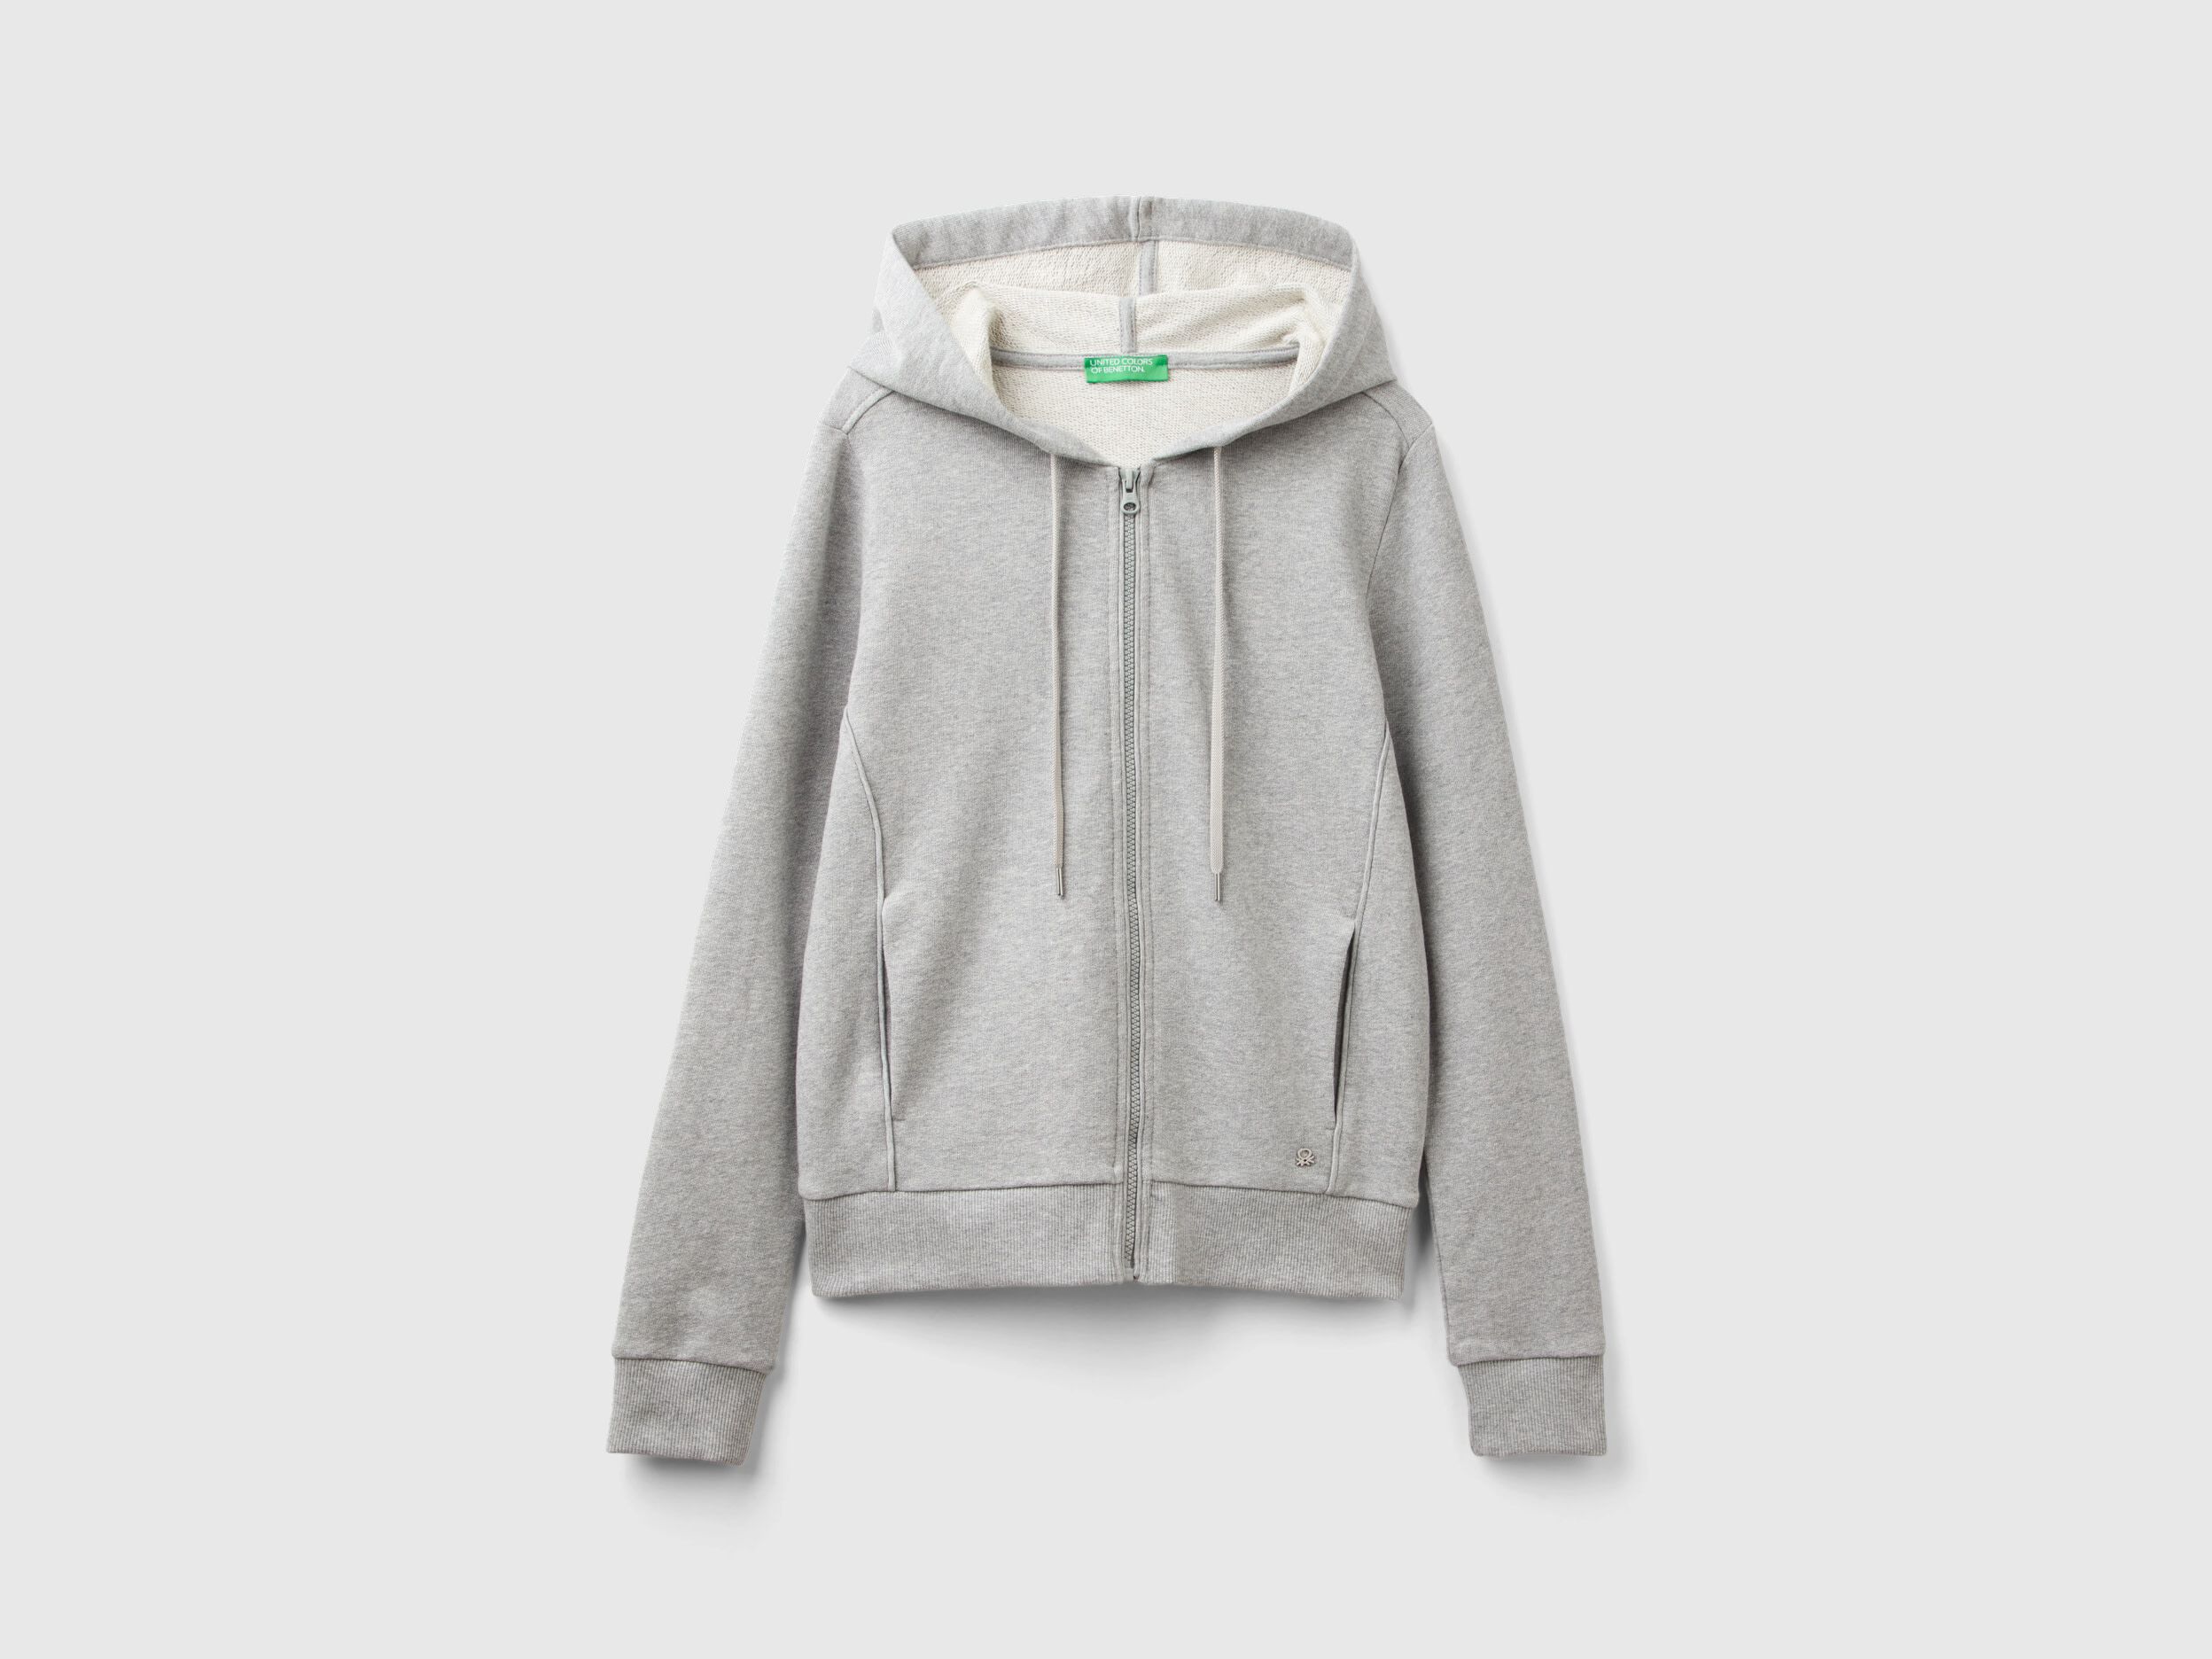 100% cotton sweatshirt with zip and hood - Light Gray | Benetton